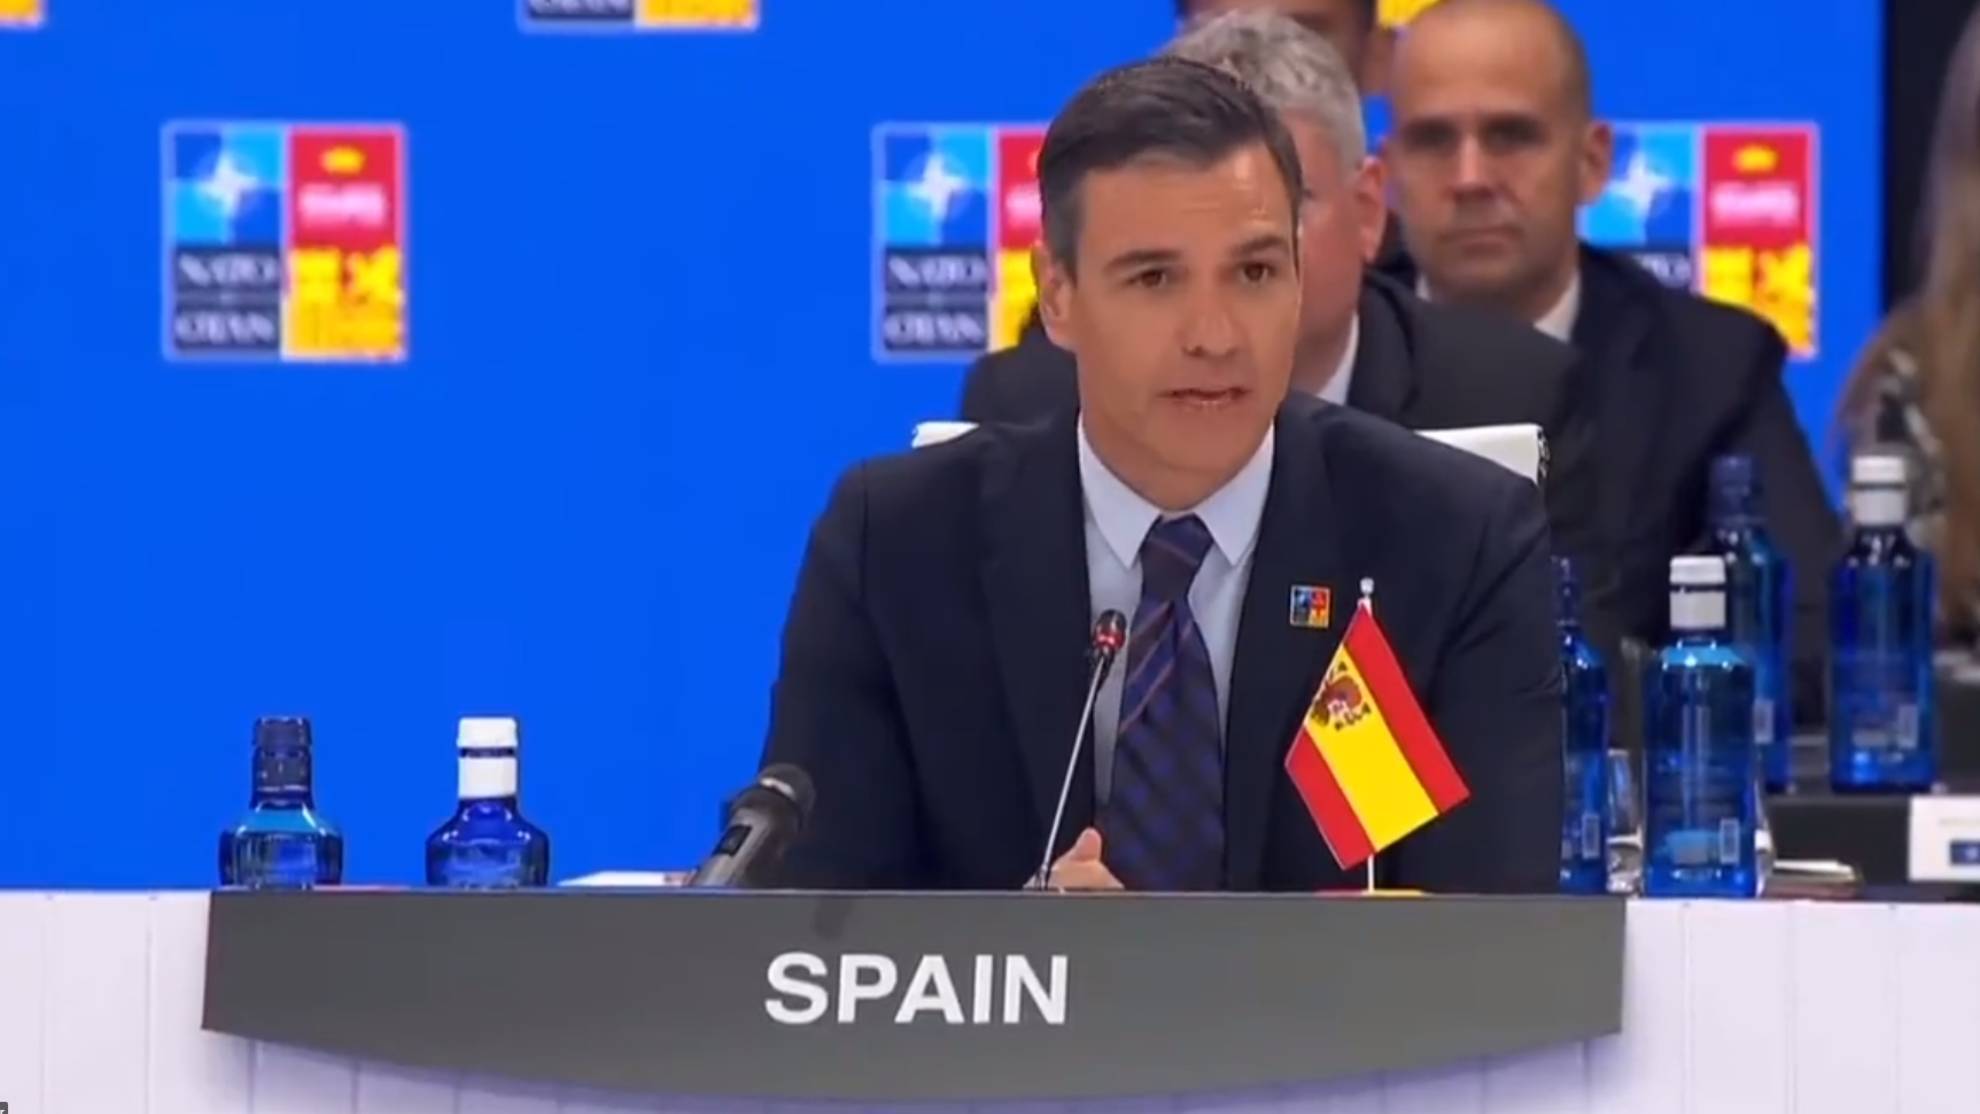 El error viral en el arranque de la Cumbre de la OTAN con Pedro Sánchez y la bandera de España